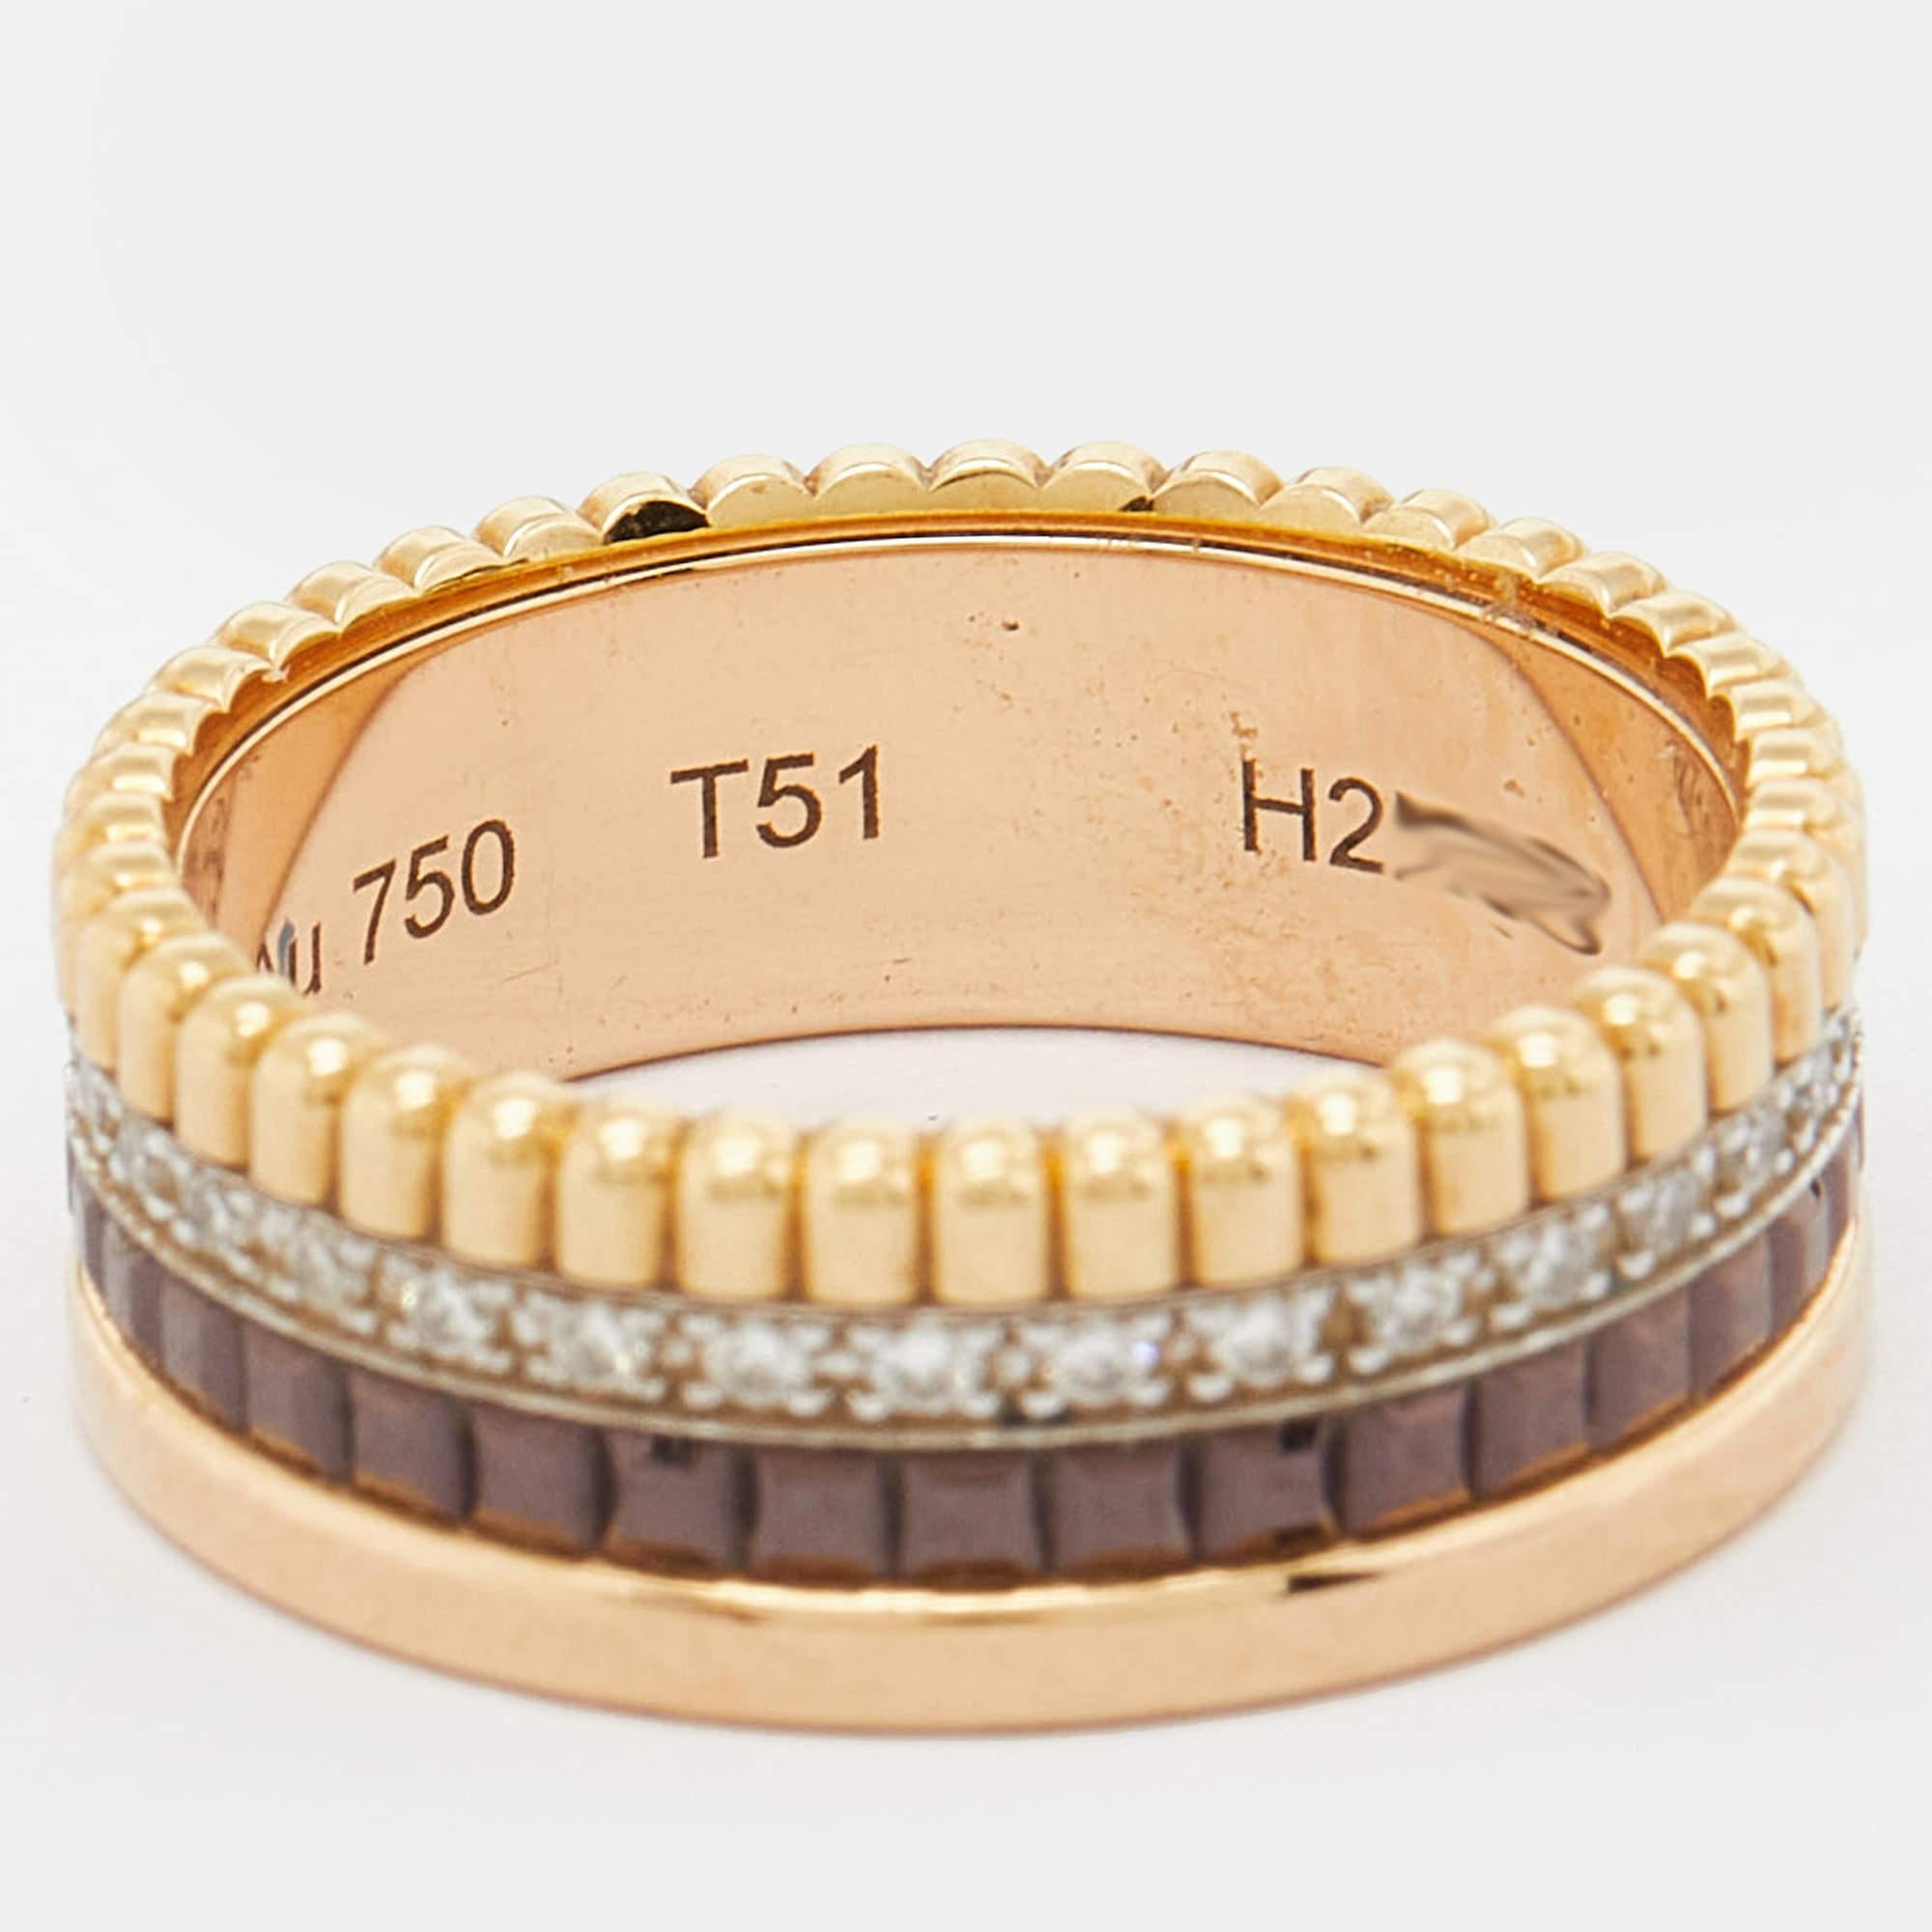 Der Ring von Boucheron ist ein exquisites Schmuckstück, das Eleganz und Raffinesse ausstrahlt. Das filigrane Design aus dreifarbigem 18-karätigem Gold und braunem PVD zeigt die ikonischen Motive der Quatre Collection, die mit funkelnden Diamanten